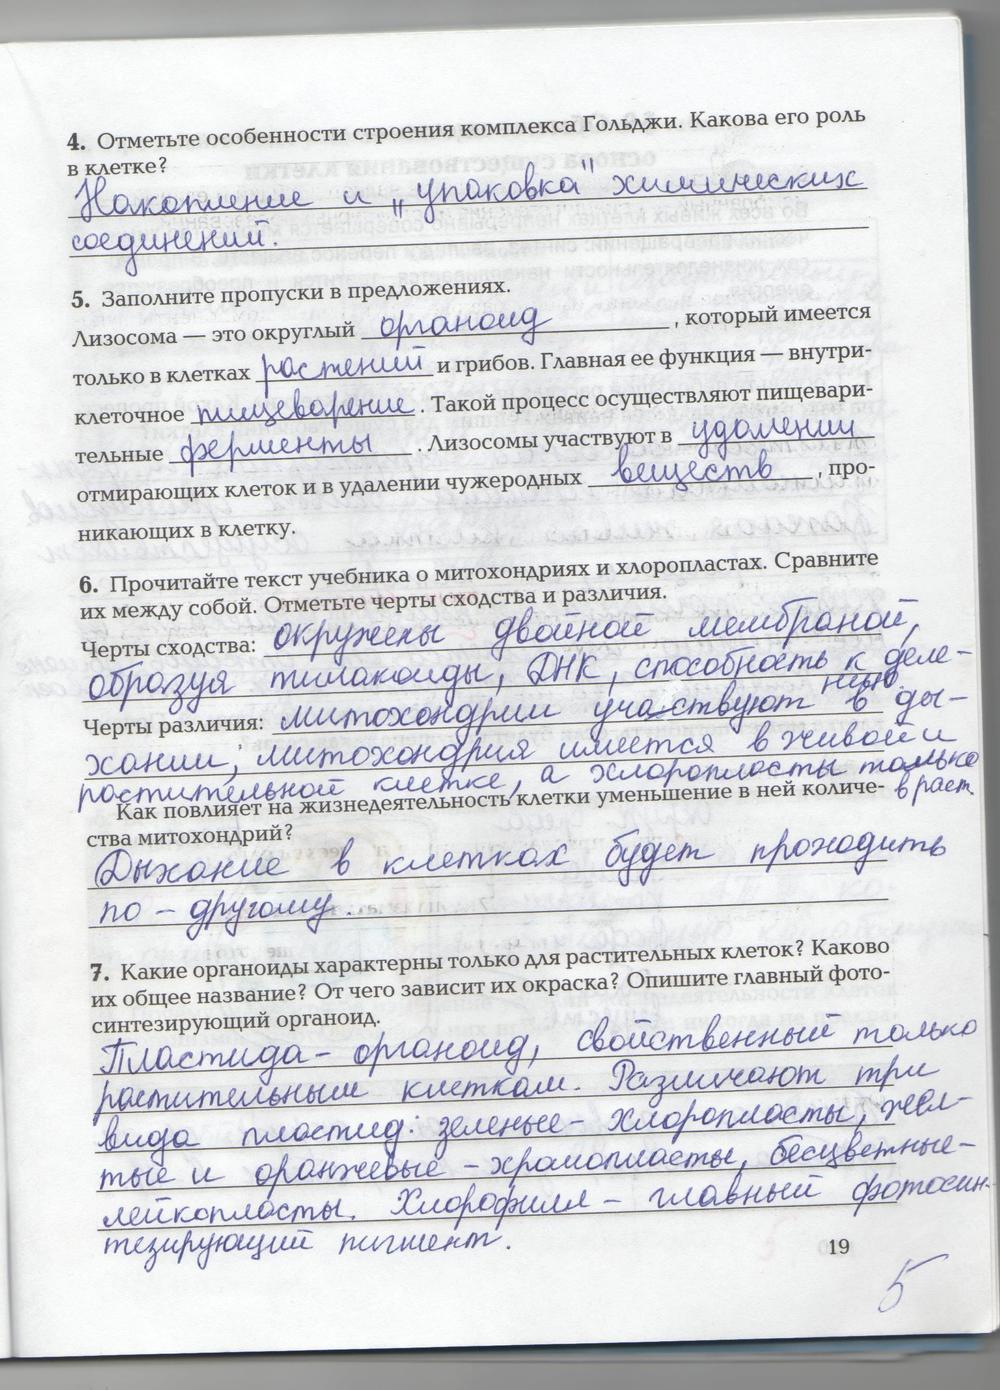 гдз 9 класс рабочая тетрадь страница 19 биология Козлова, Кучменко